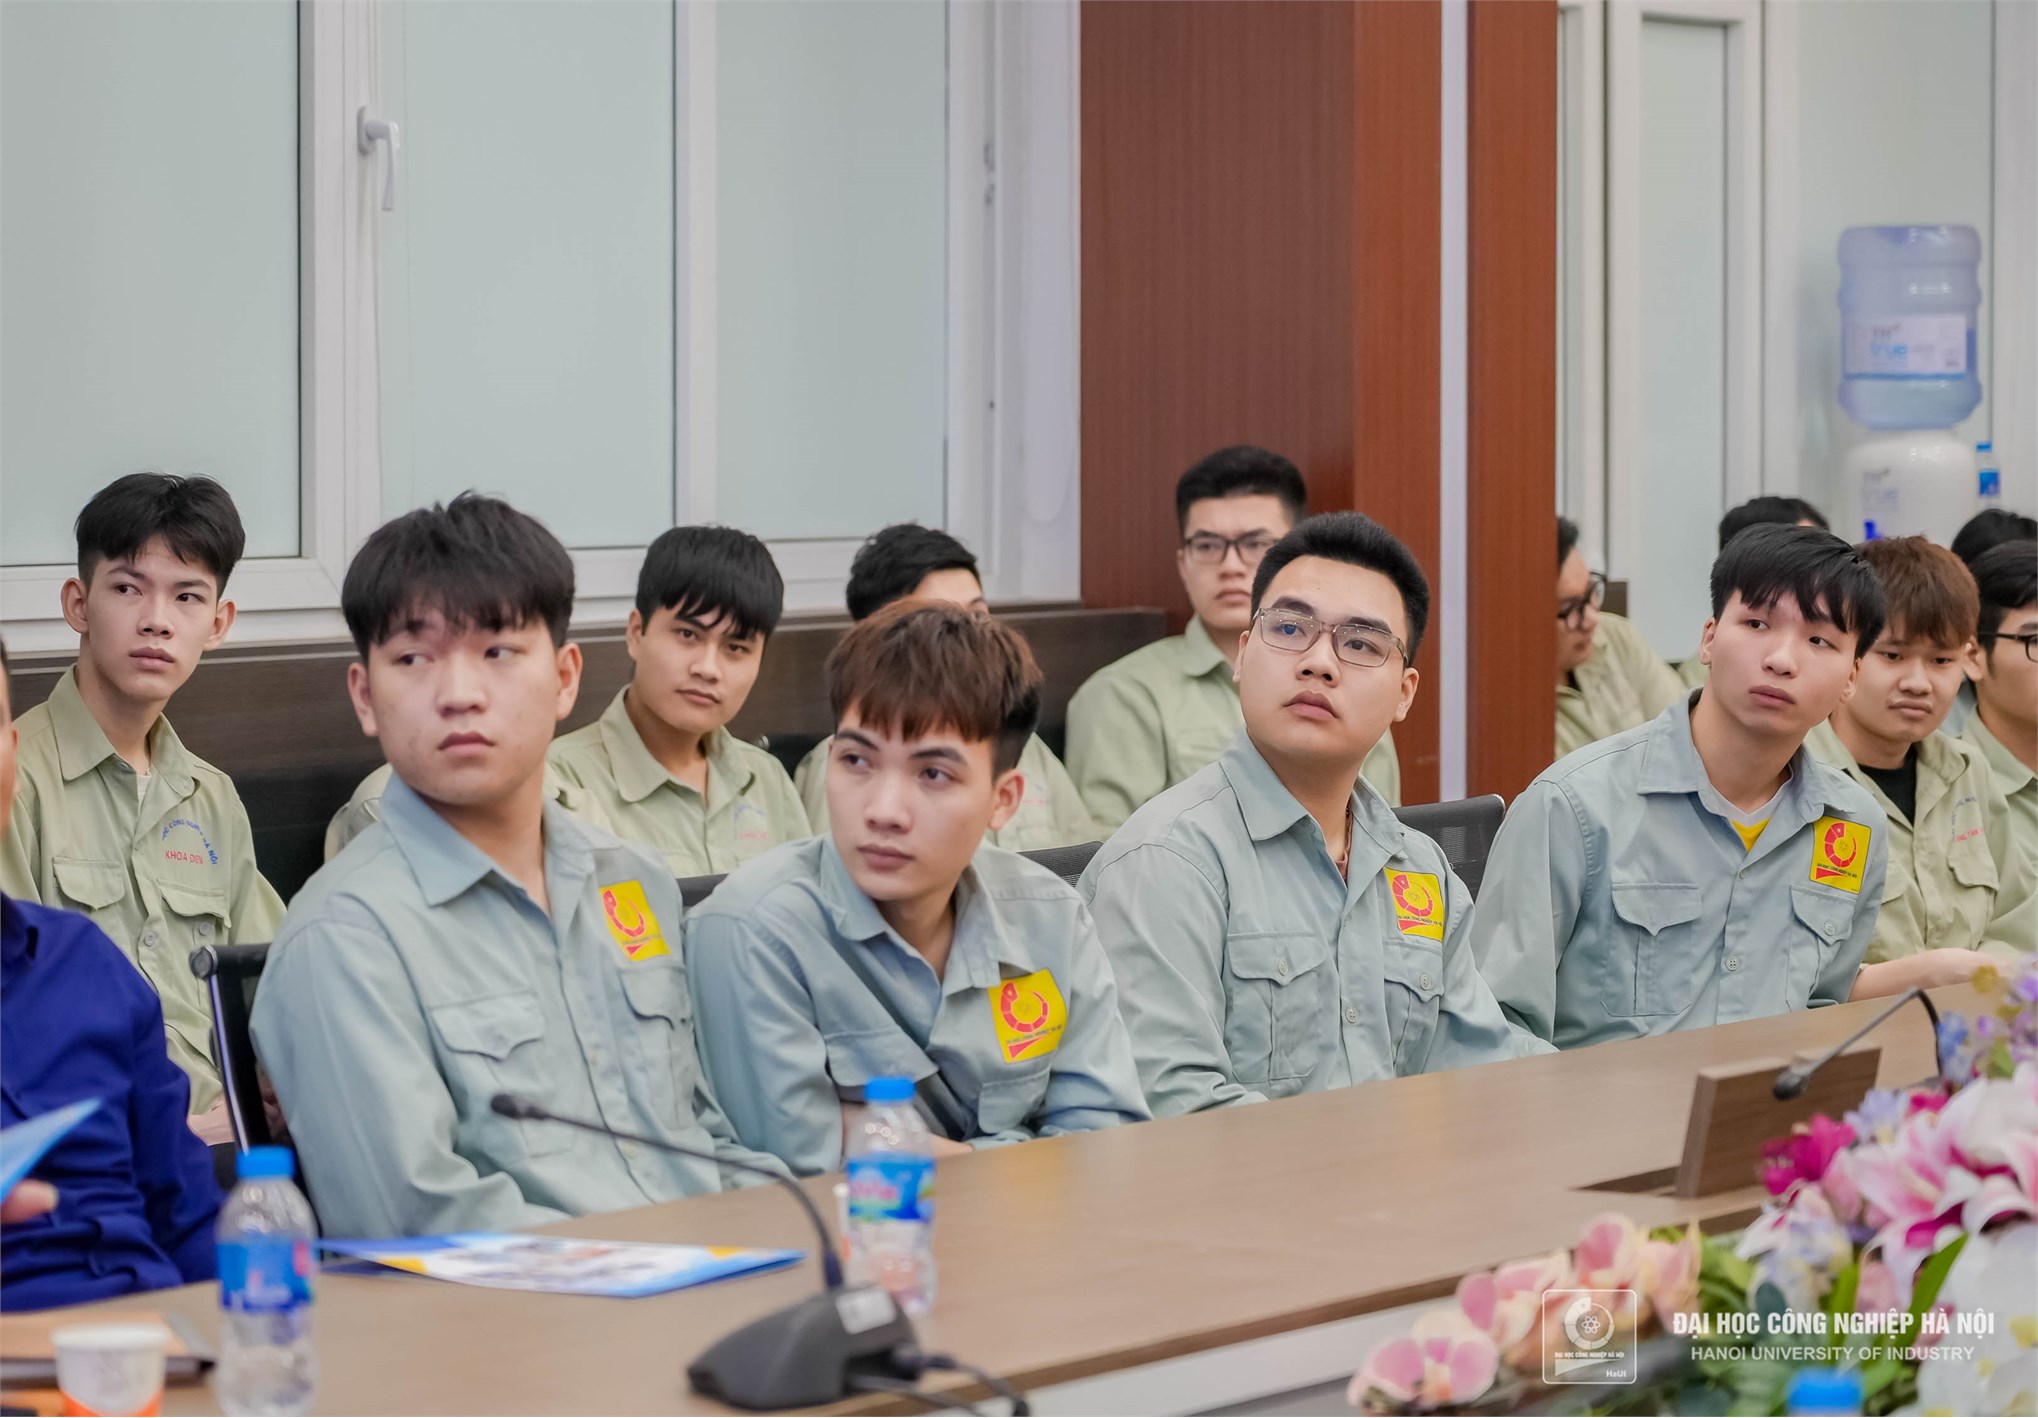 Đại học Công nghiệp Hà Nội nhận bàn giao thiết bị tài trợ từ Công ty TNHH điều hòa không khí Carrier Việt Nam